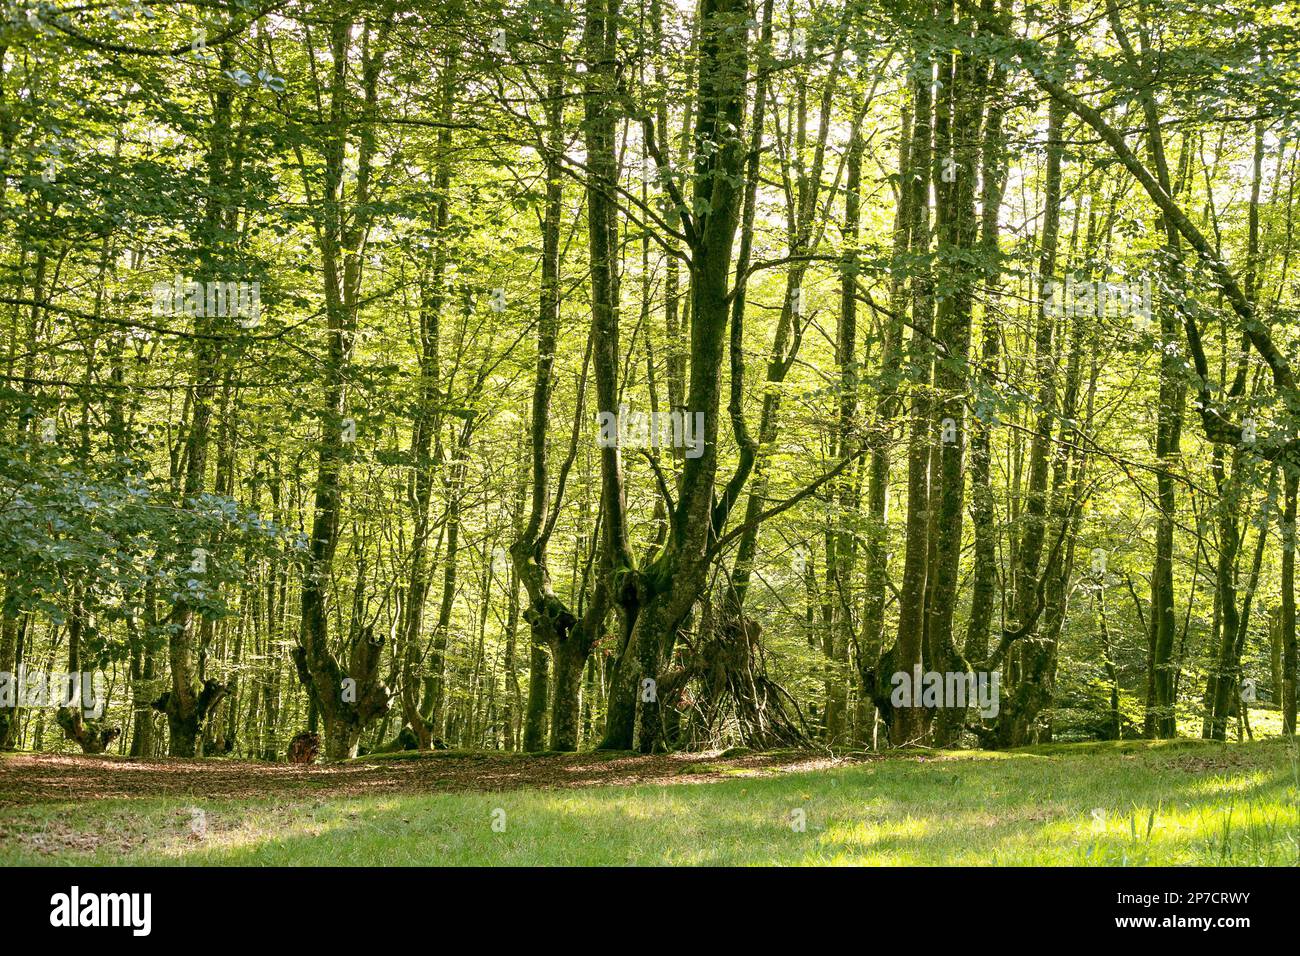 Forêt de hêtre du Parc naturel d'Urkiola en pays basque, Espagne. Banque D'Images